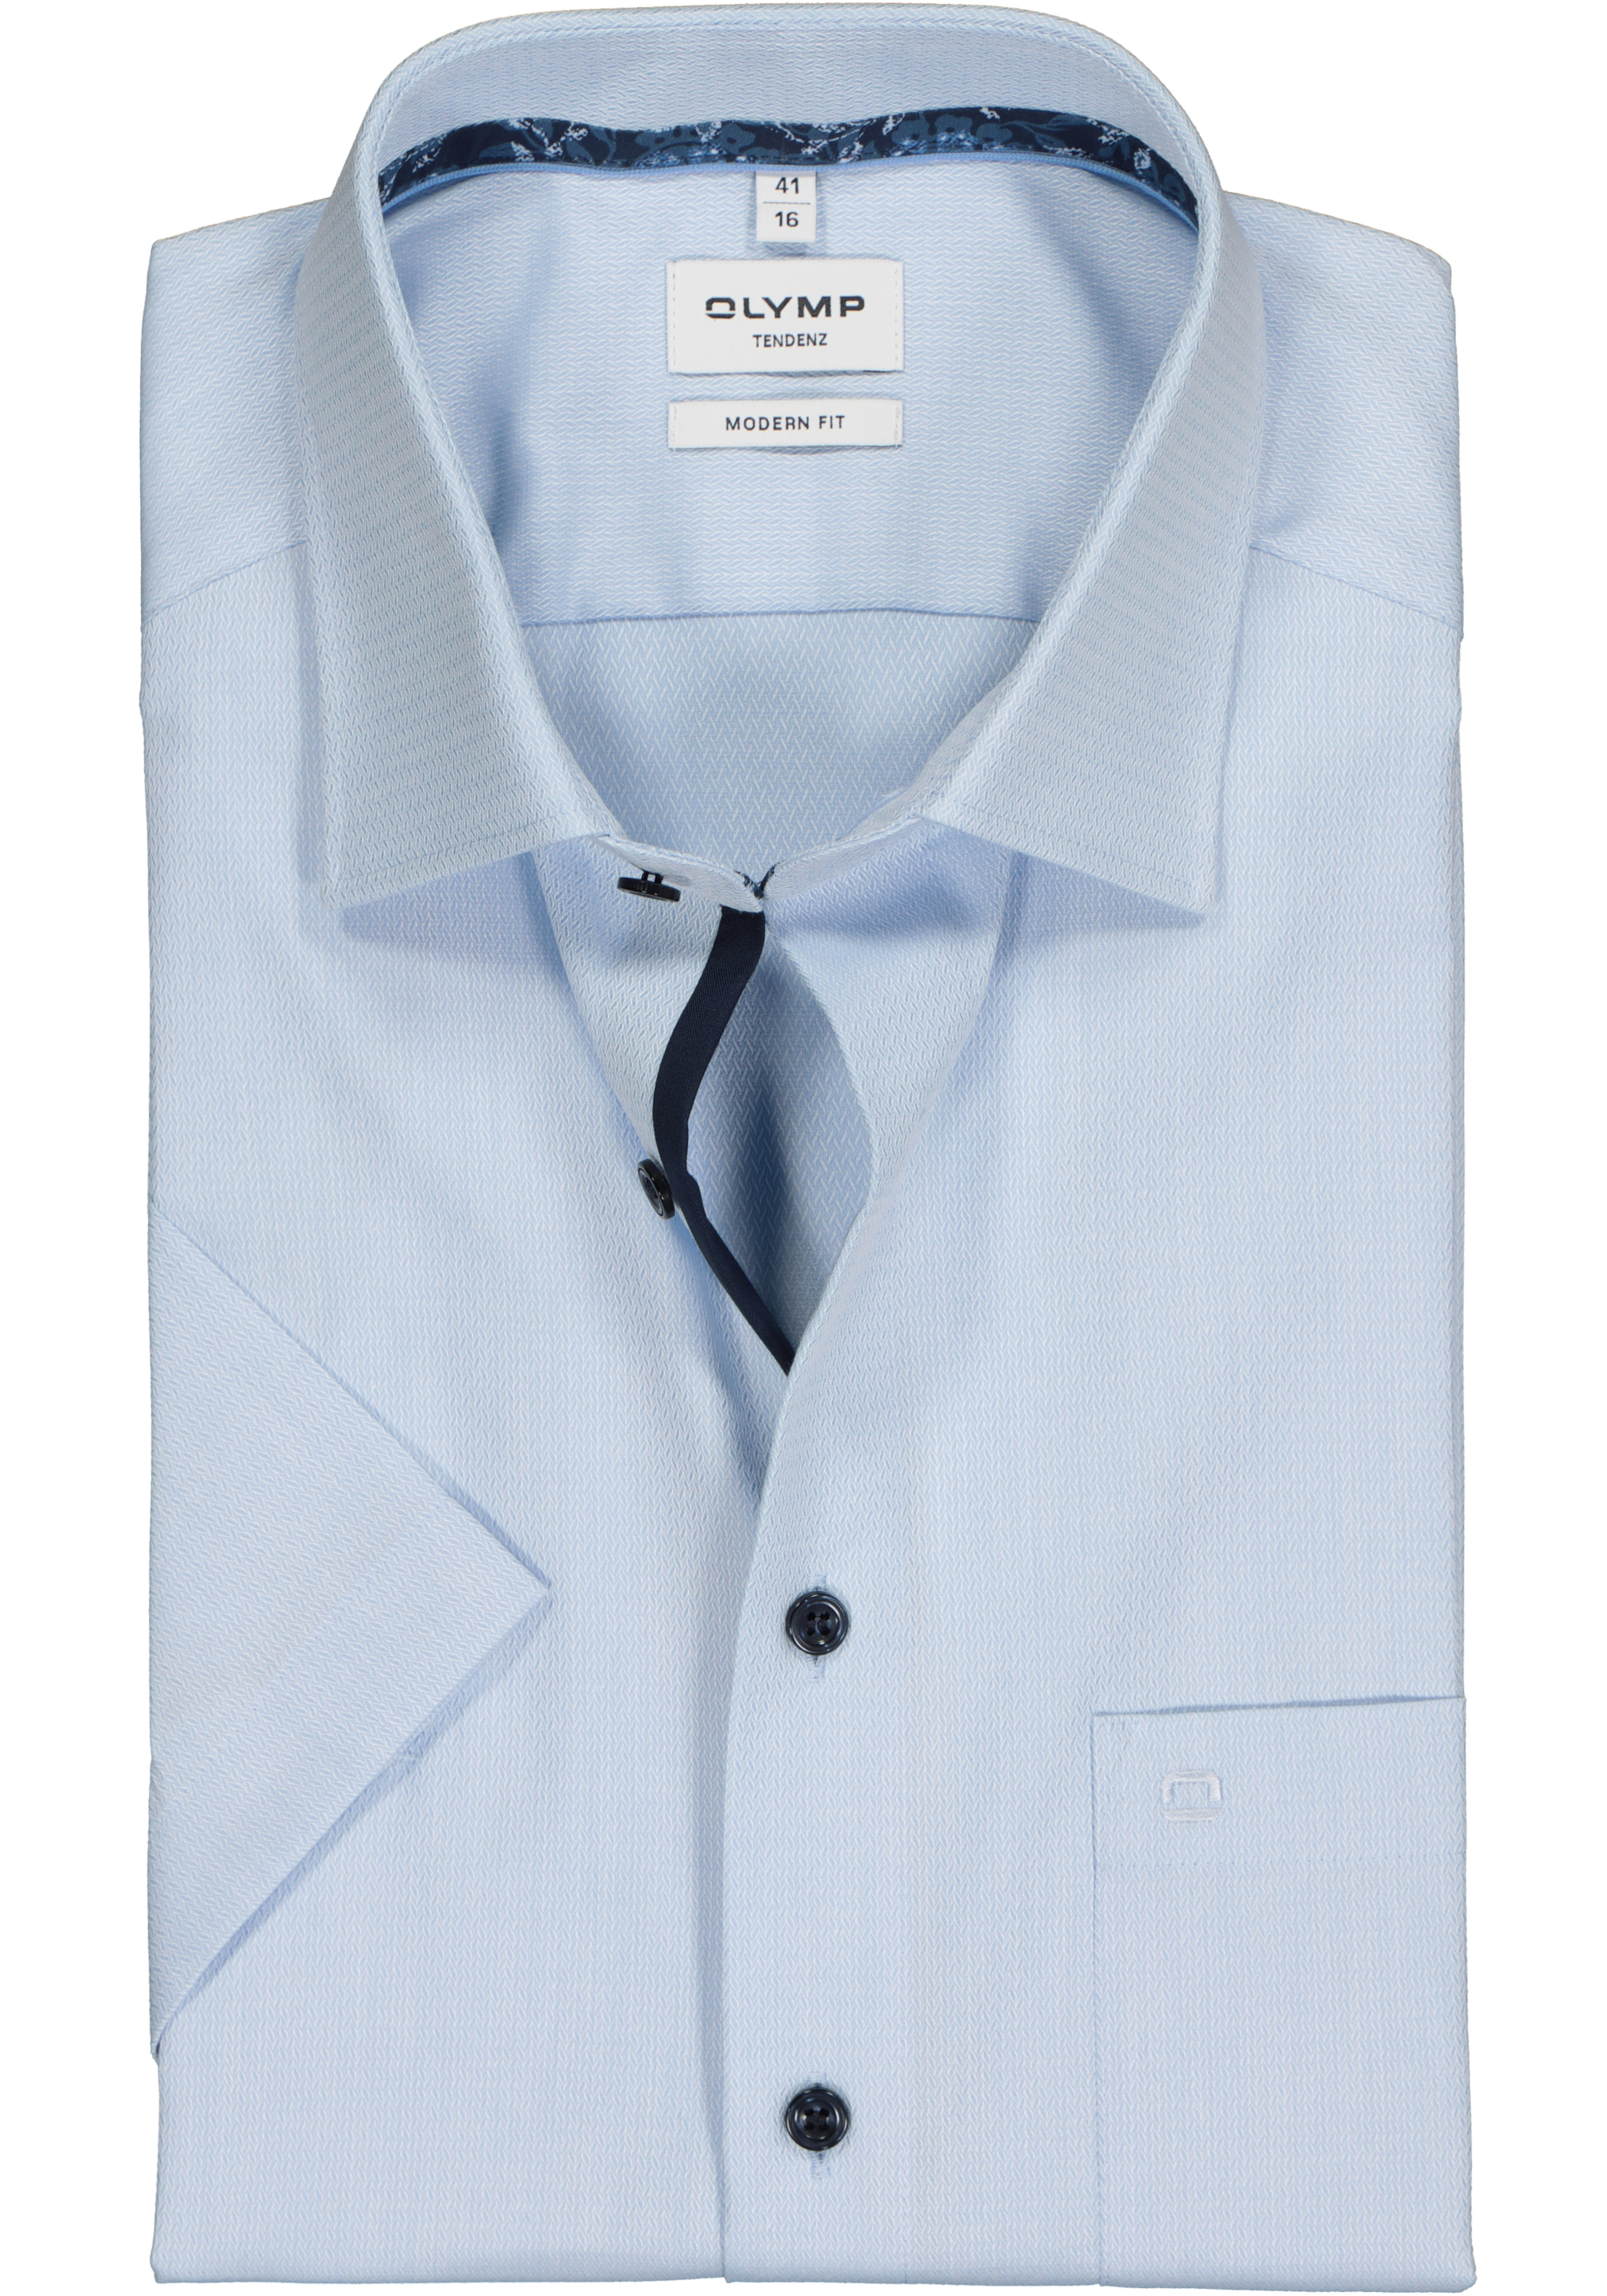 OLYMP modern fit overhemd, korte mouw, structuur, lichtblauw (contrast)